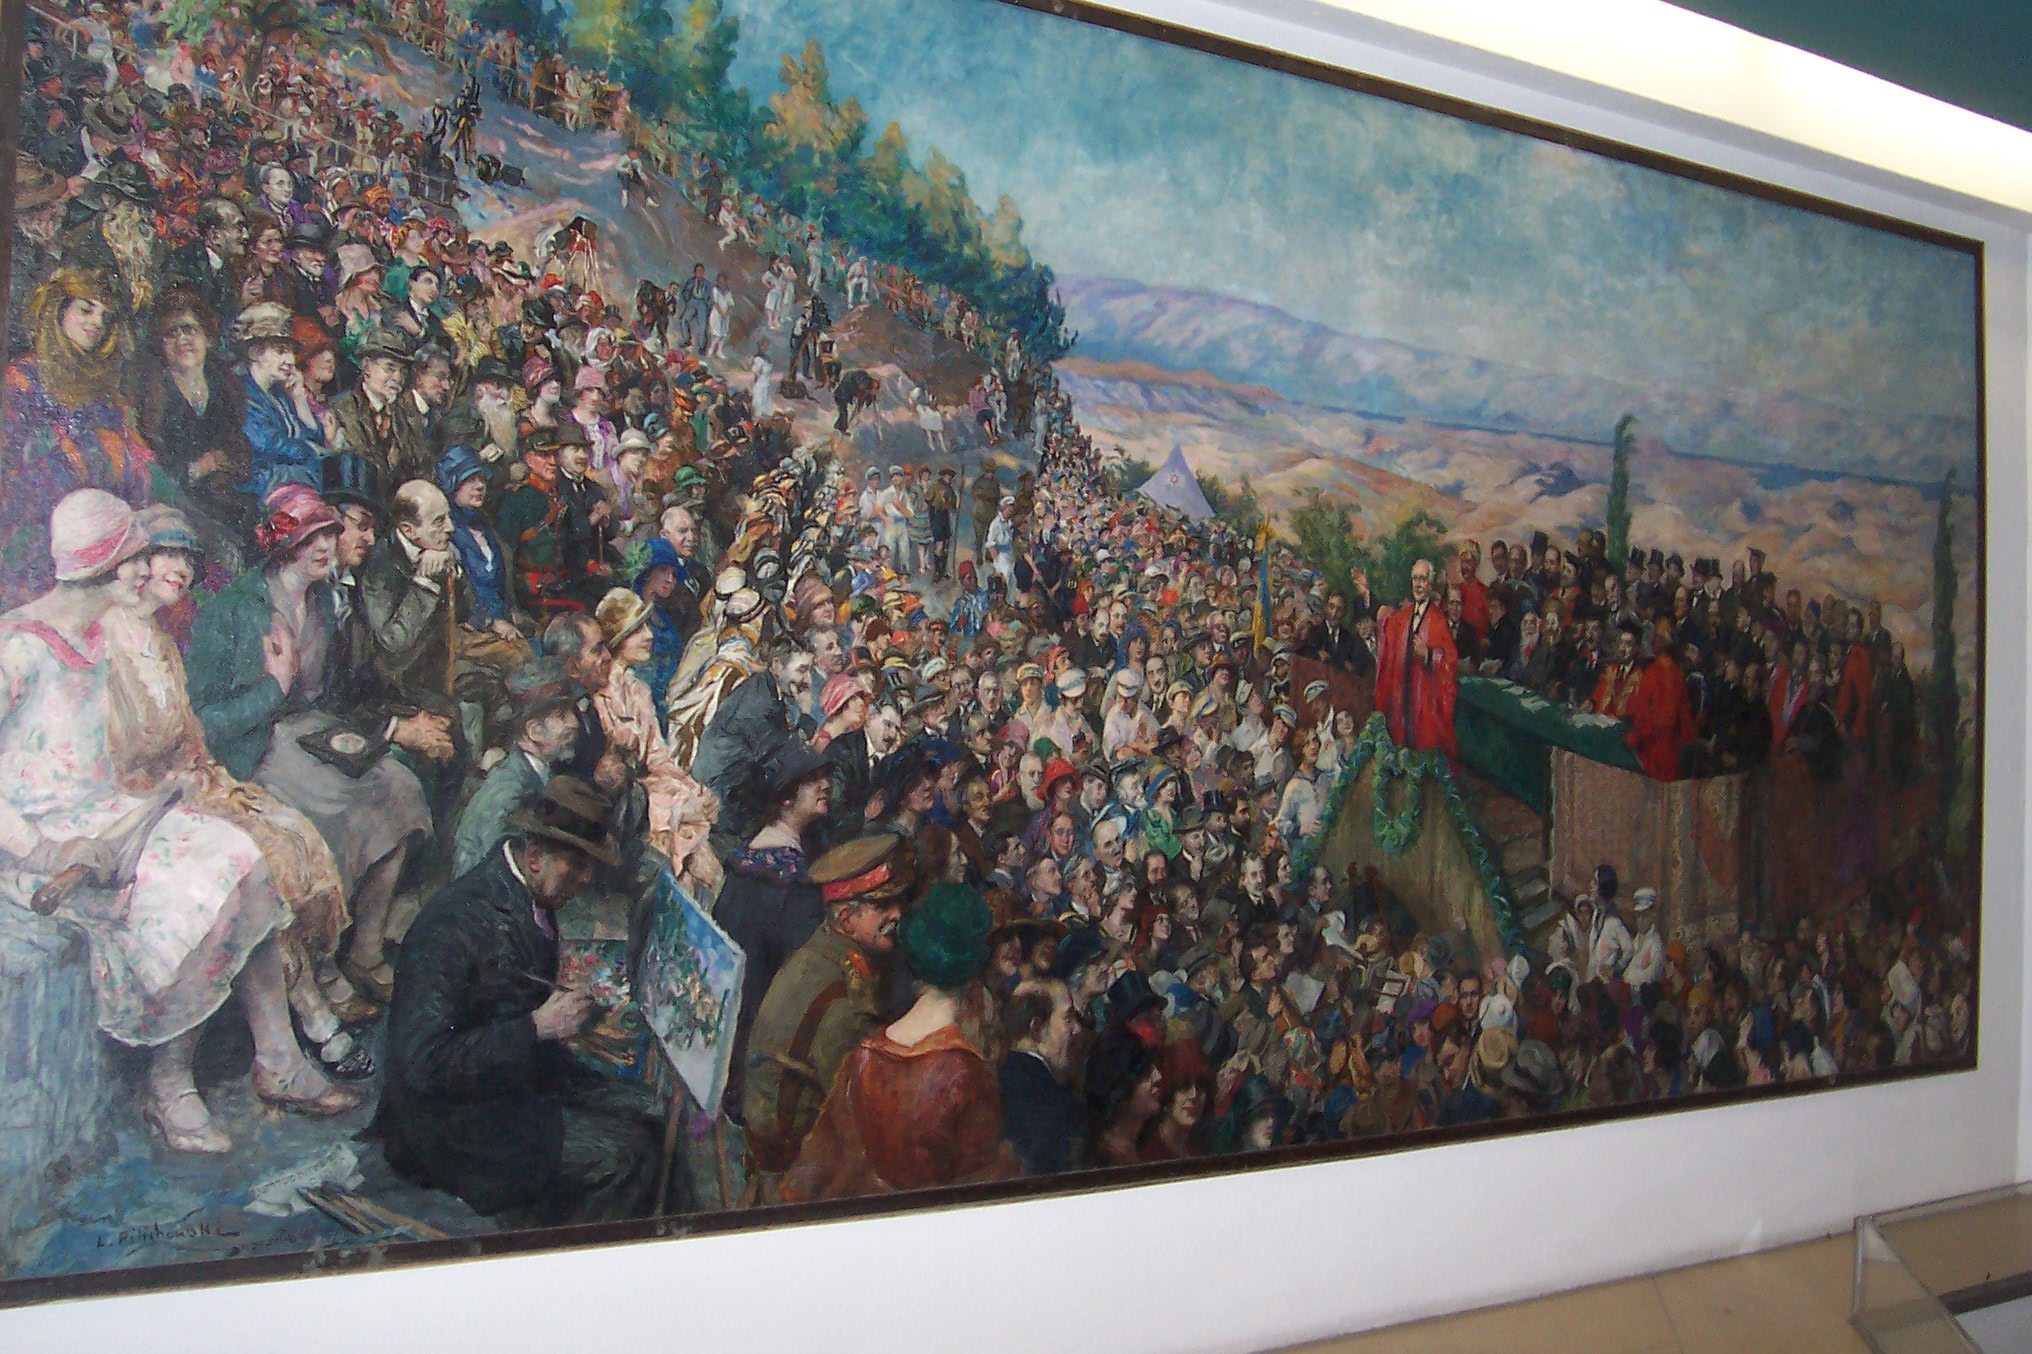 ציור שמן אירוע פתיחה 1925, קמפוס הר הצופים של האוניברסיטה העברית בירושלים (צילום: ד"ר ענת אביטל)